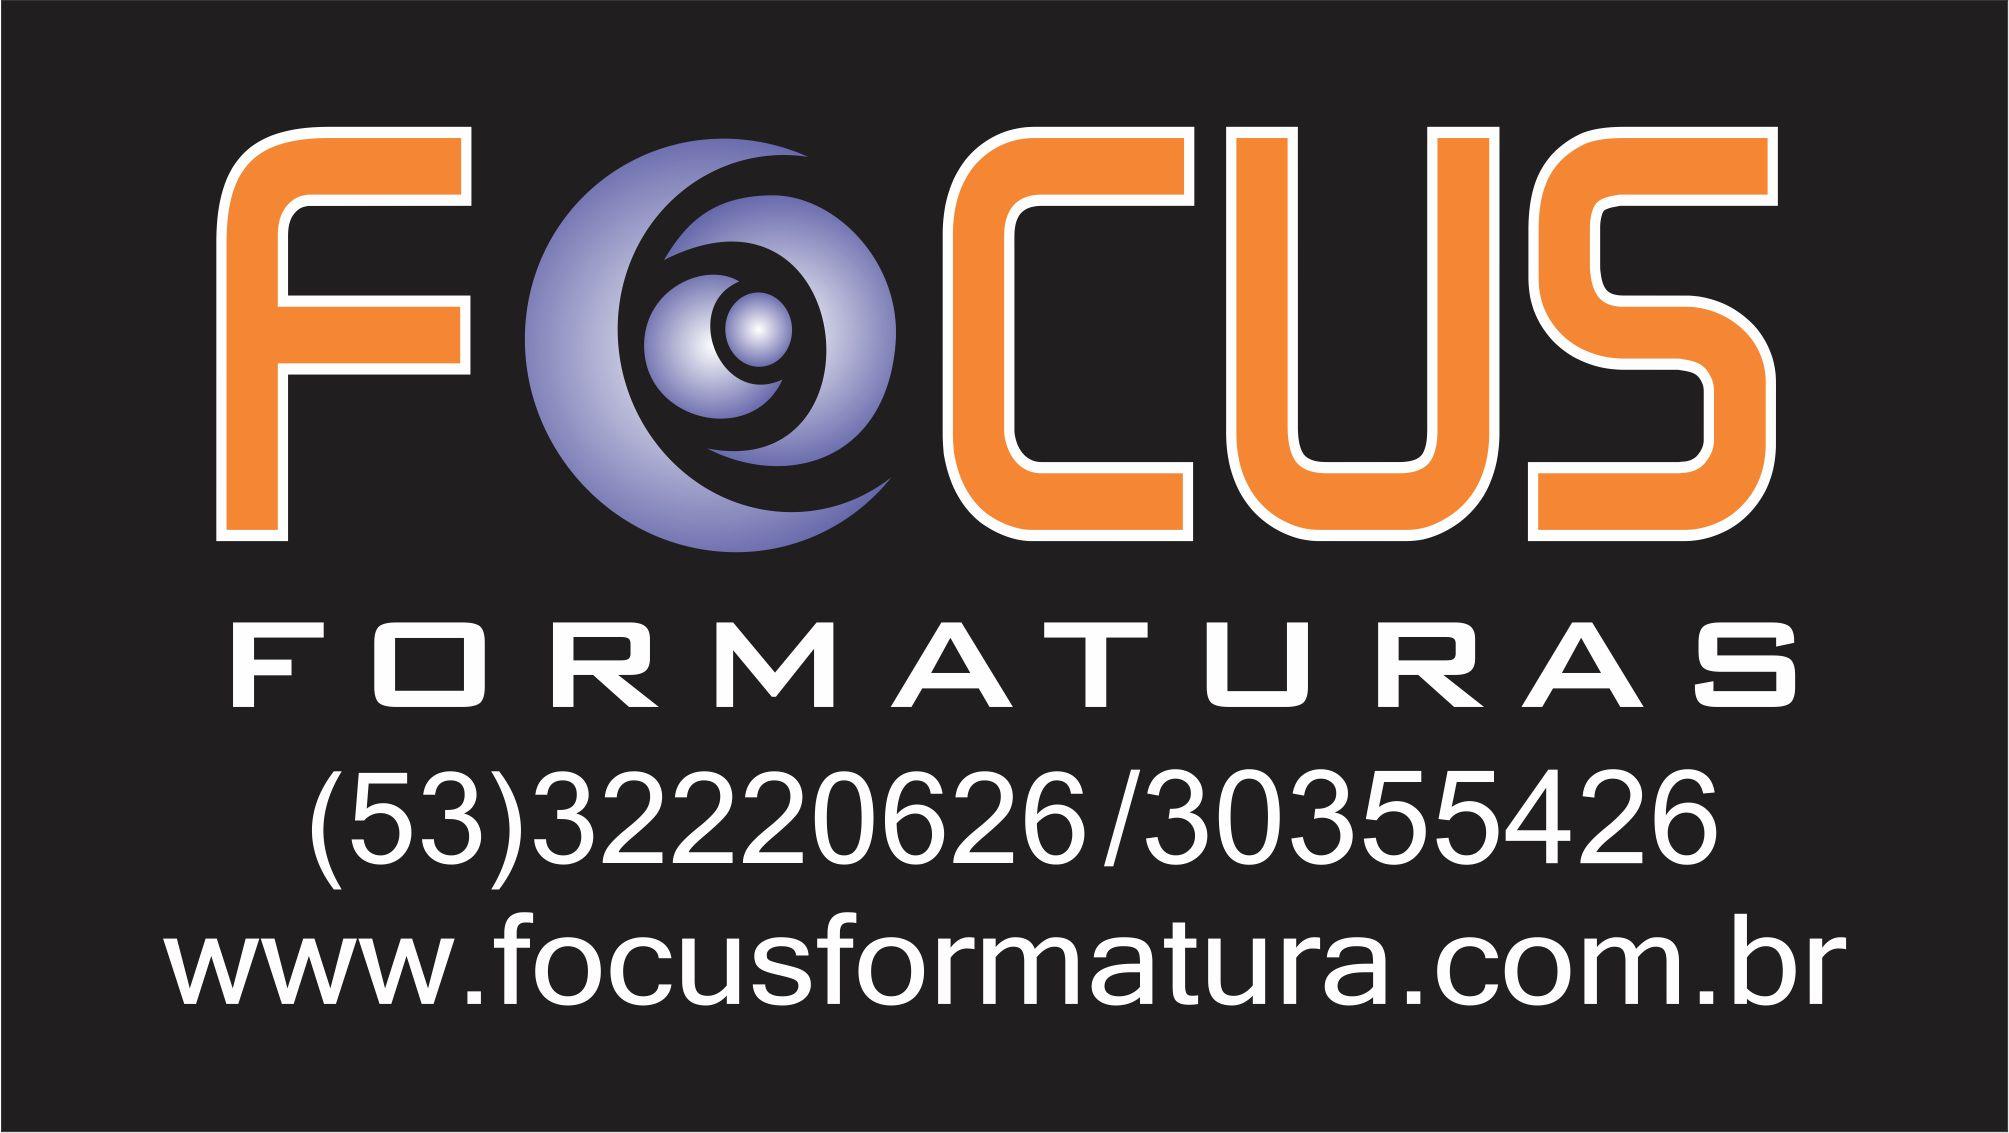 Focus Formatura e Estúdio logo